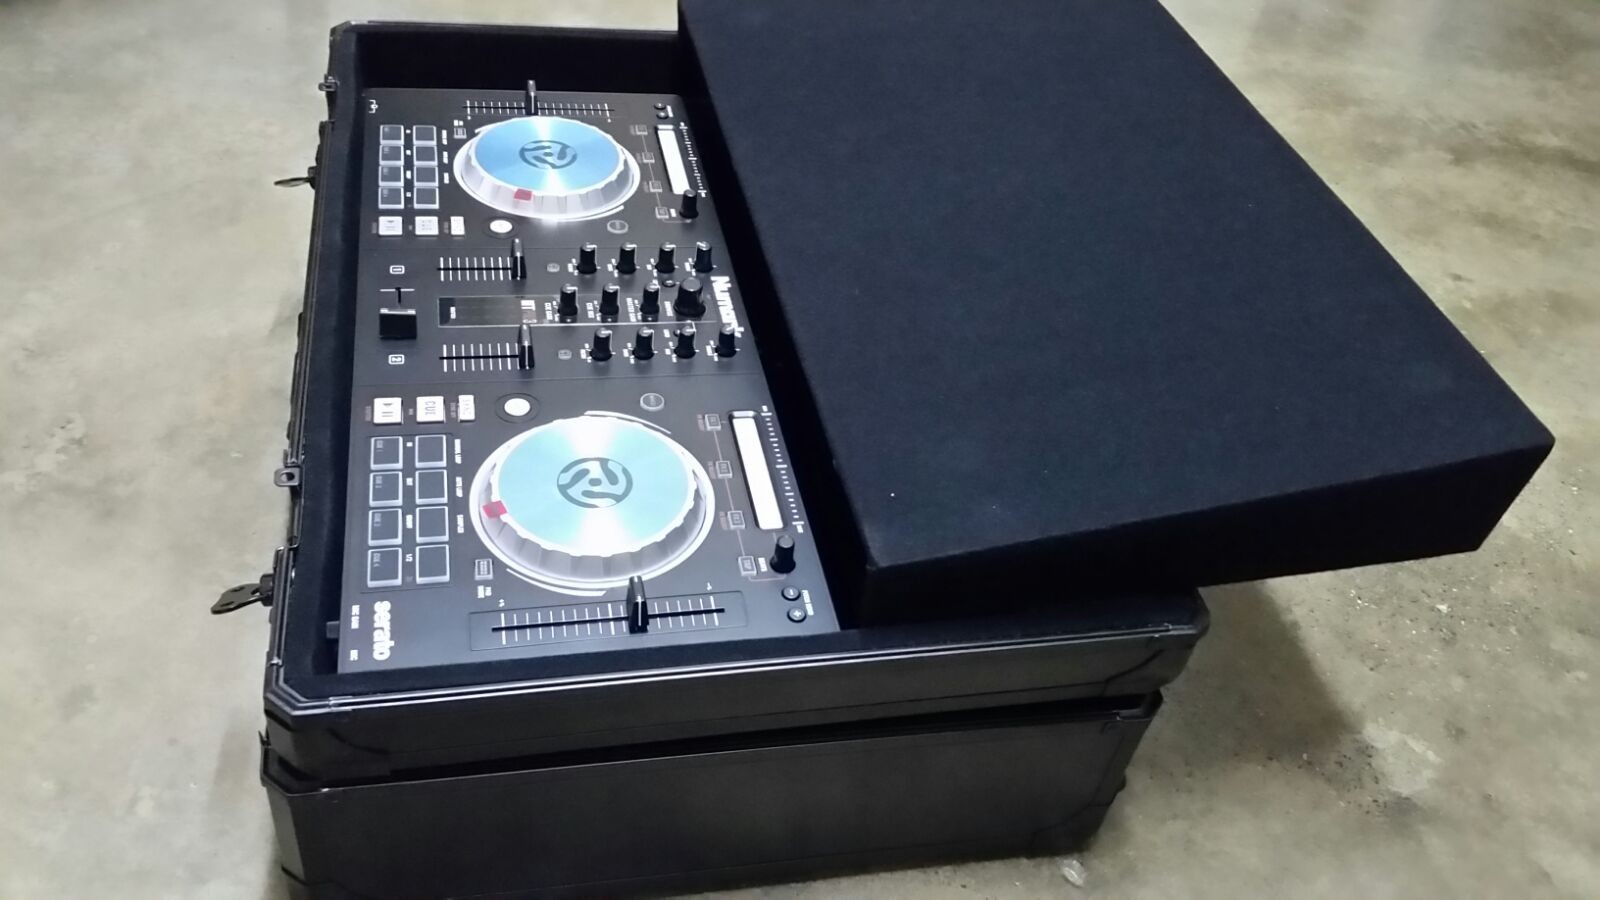 instrumentos musicales - Consola Platos DJ Mixer Factory Controladora Pioneer max Samsiph gb tb pro clean 3